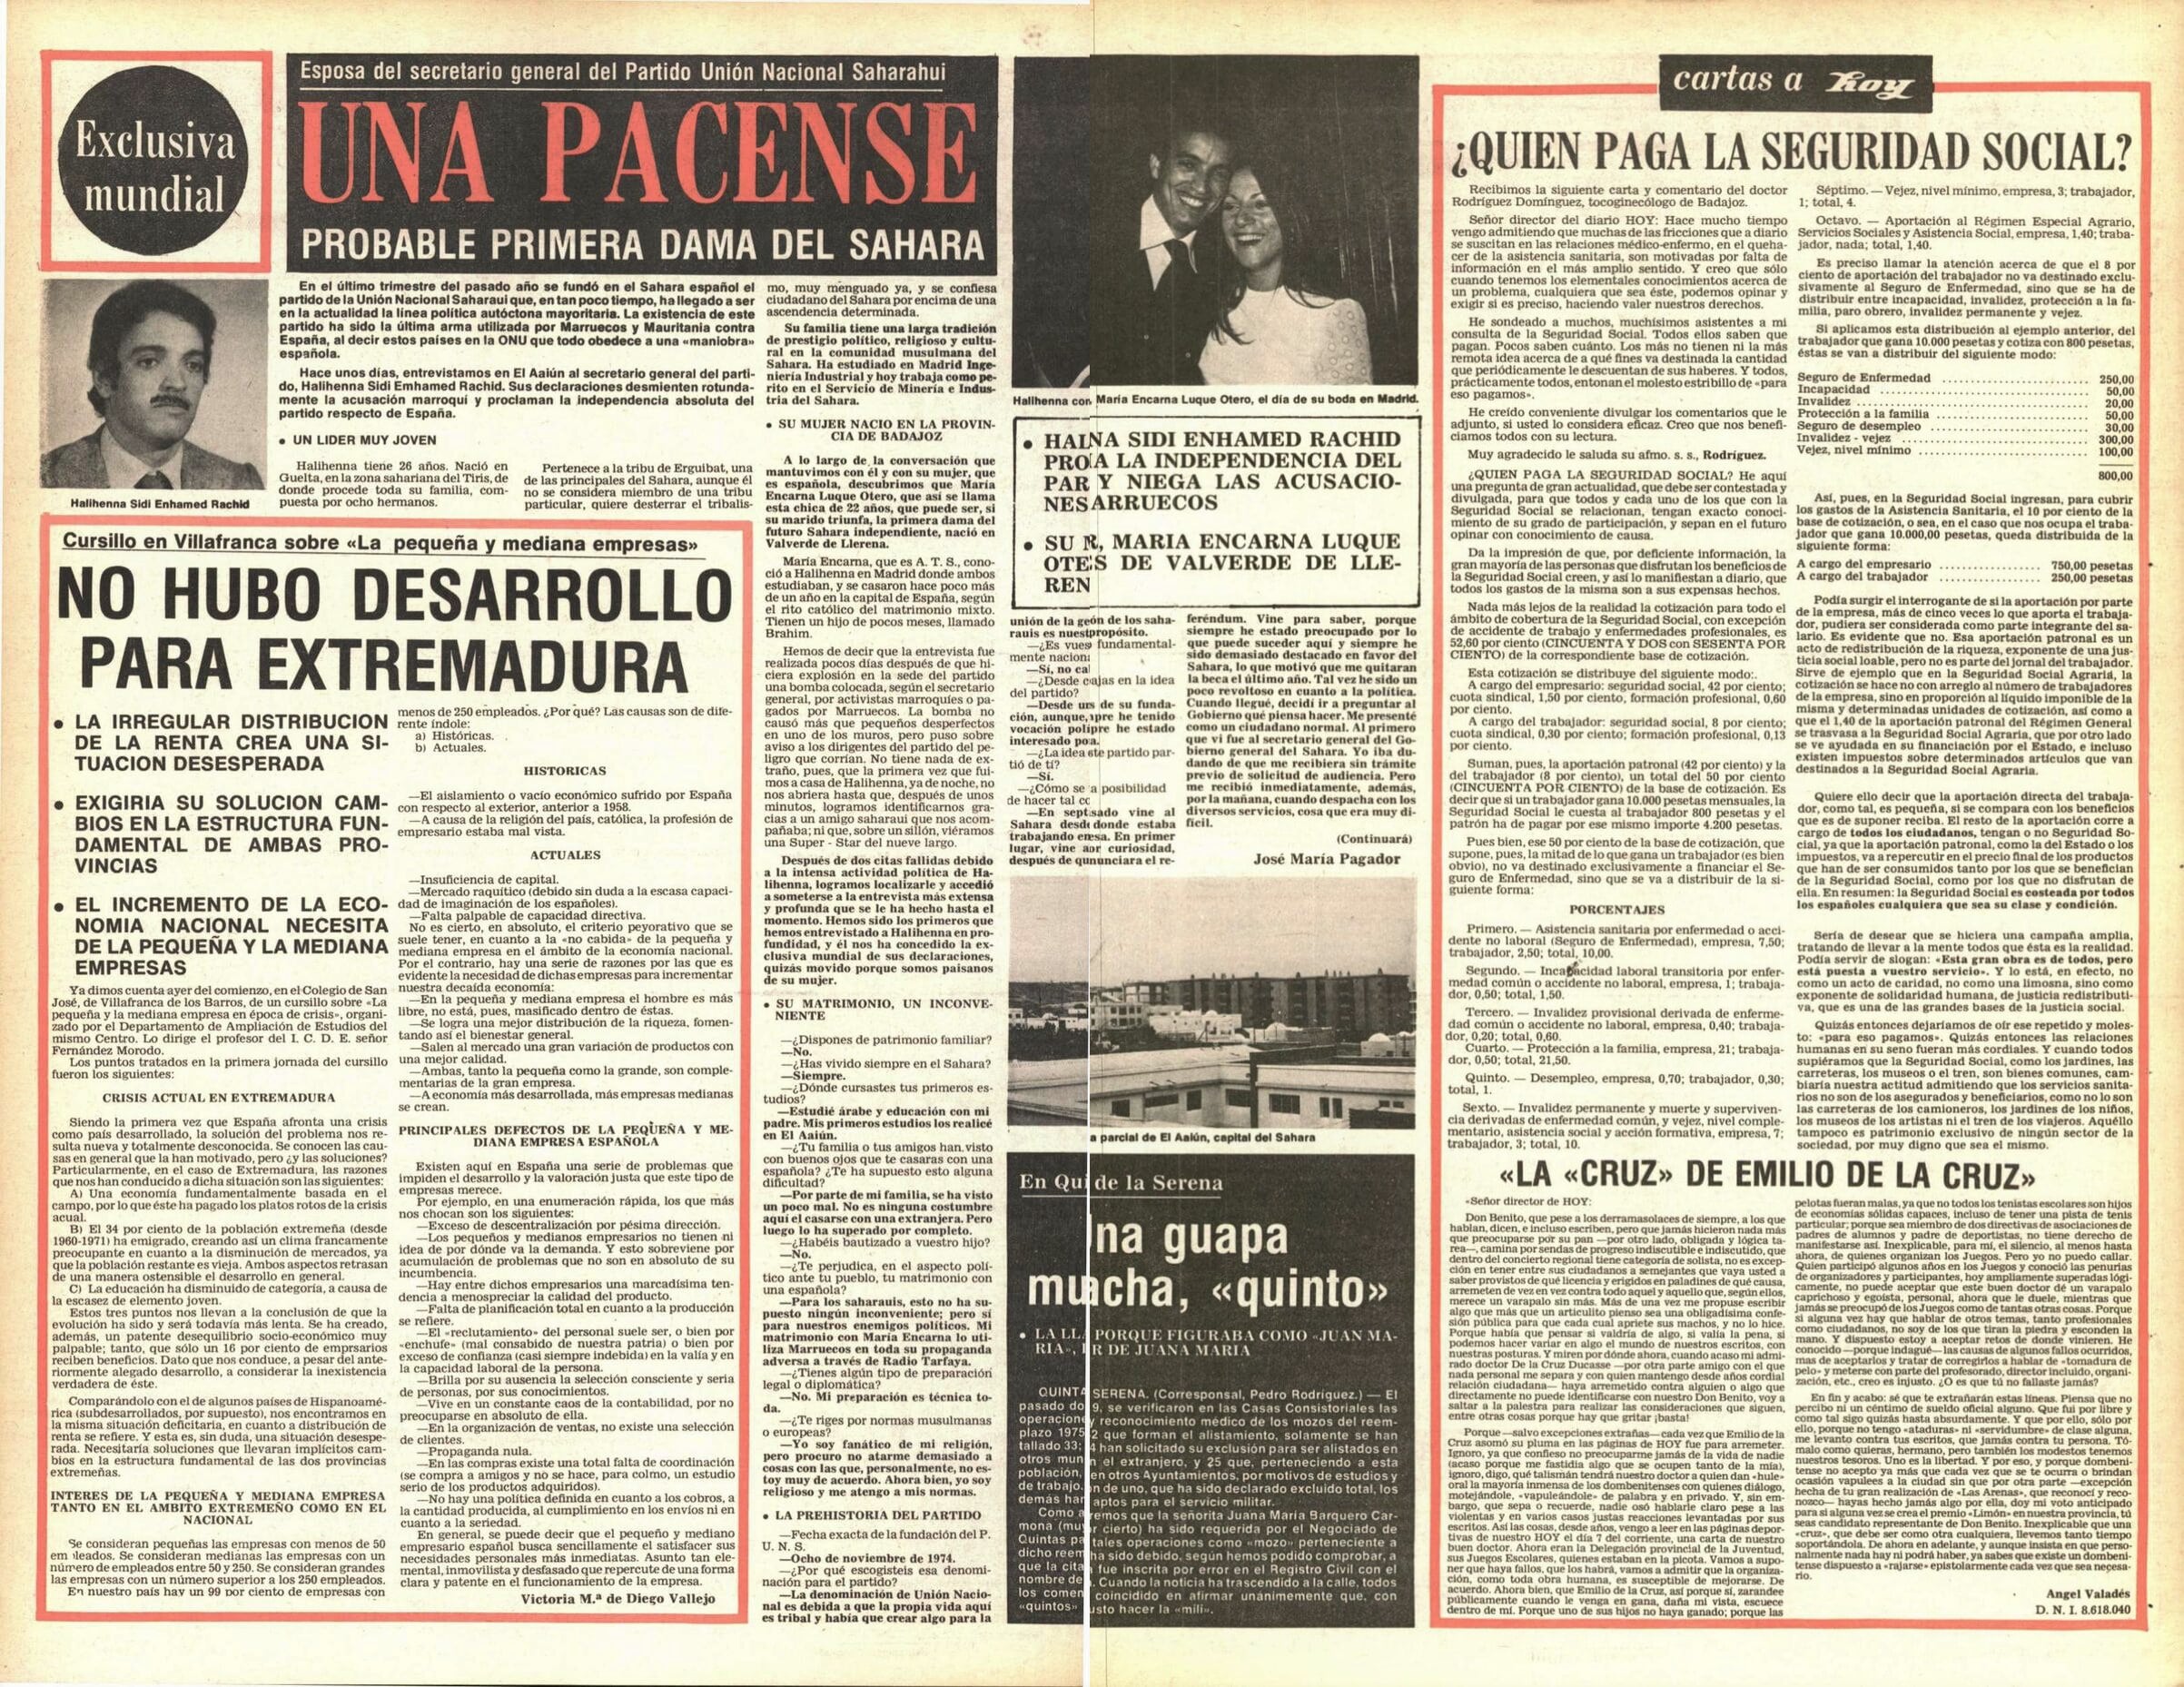 1975. Doble página con la primera entrega de mi exclusiva sobre el saharaui Halihenna, luego alto cargo marroquí para el Sáhara.